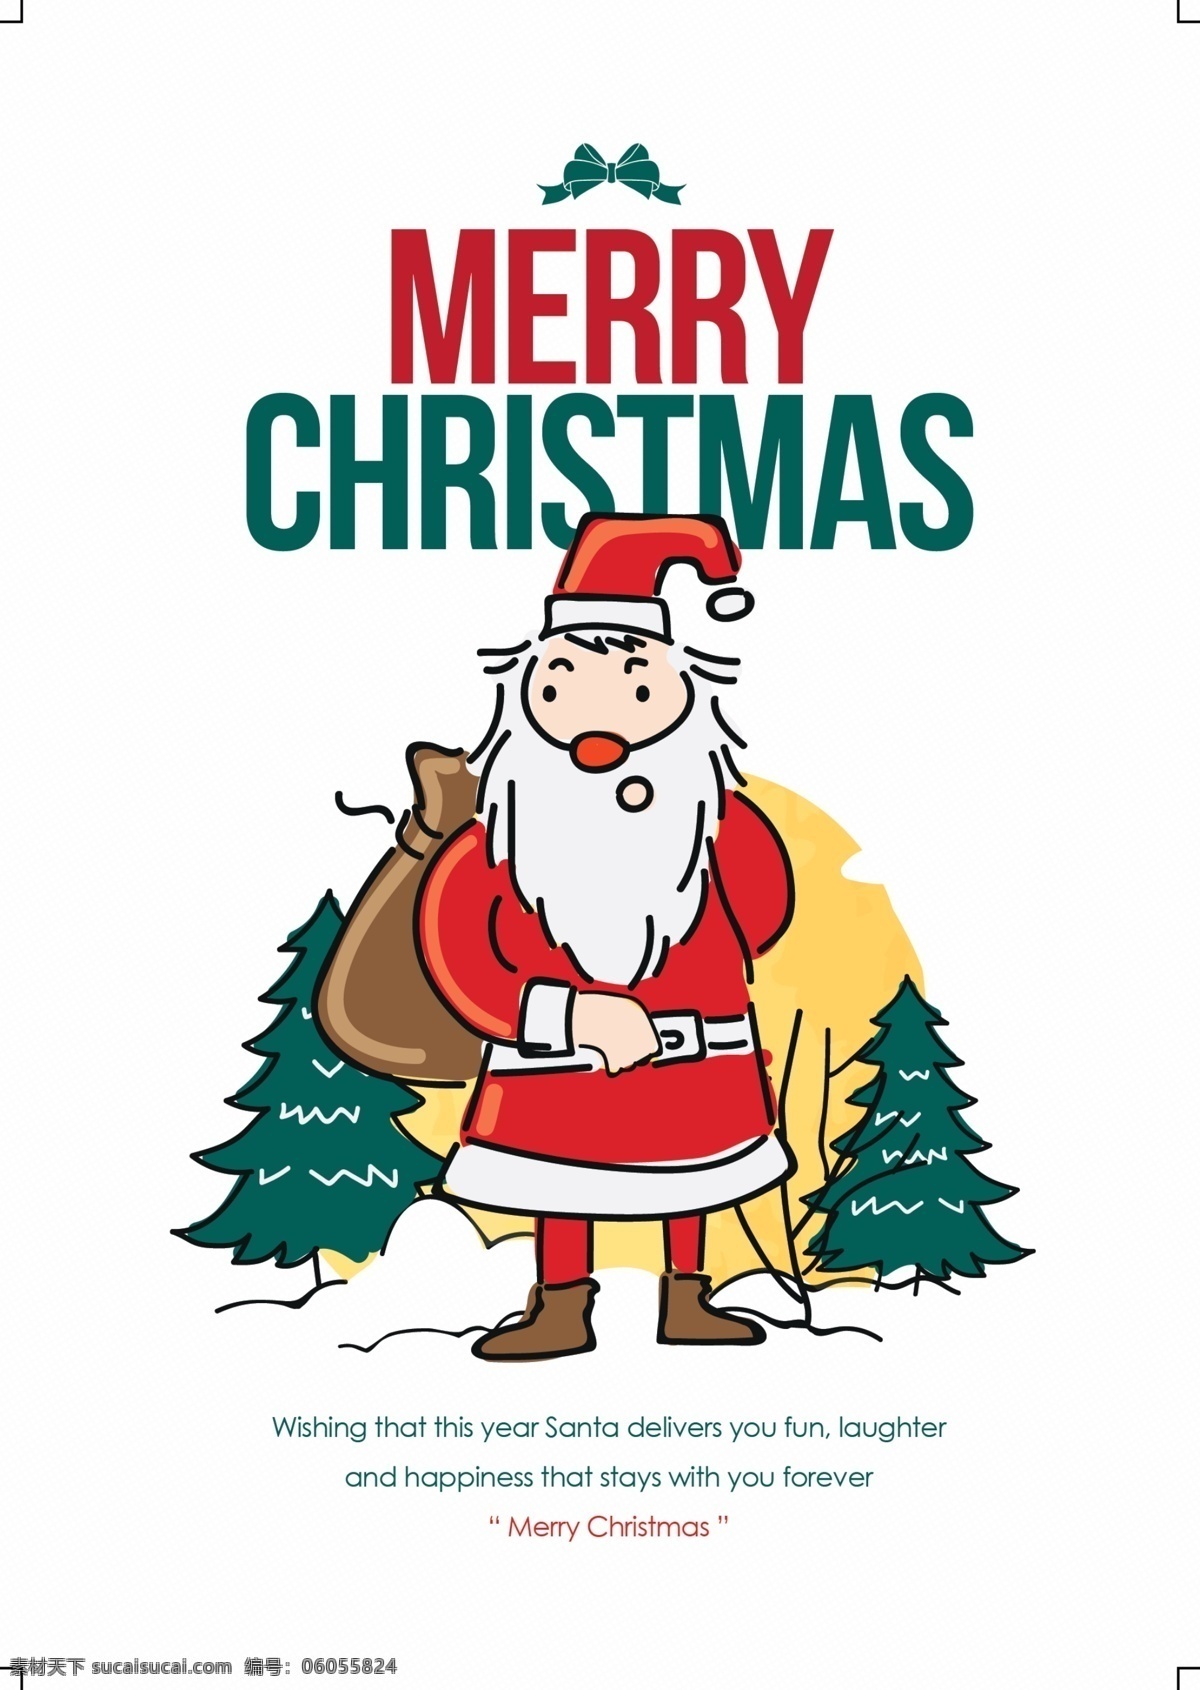 手绘 圣诞老人 圣诞 海报 宣传海报 圣诞节 促销 促销海报 圣诞海报 圣诞节海报 手绘圣诞老人 圣诞树